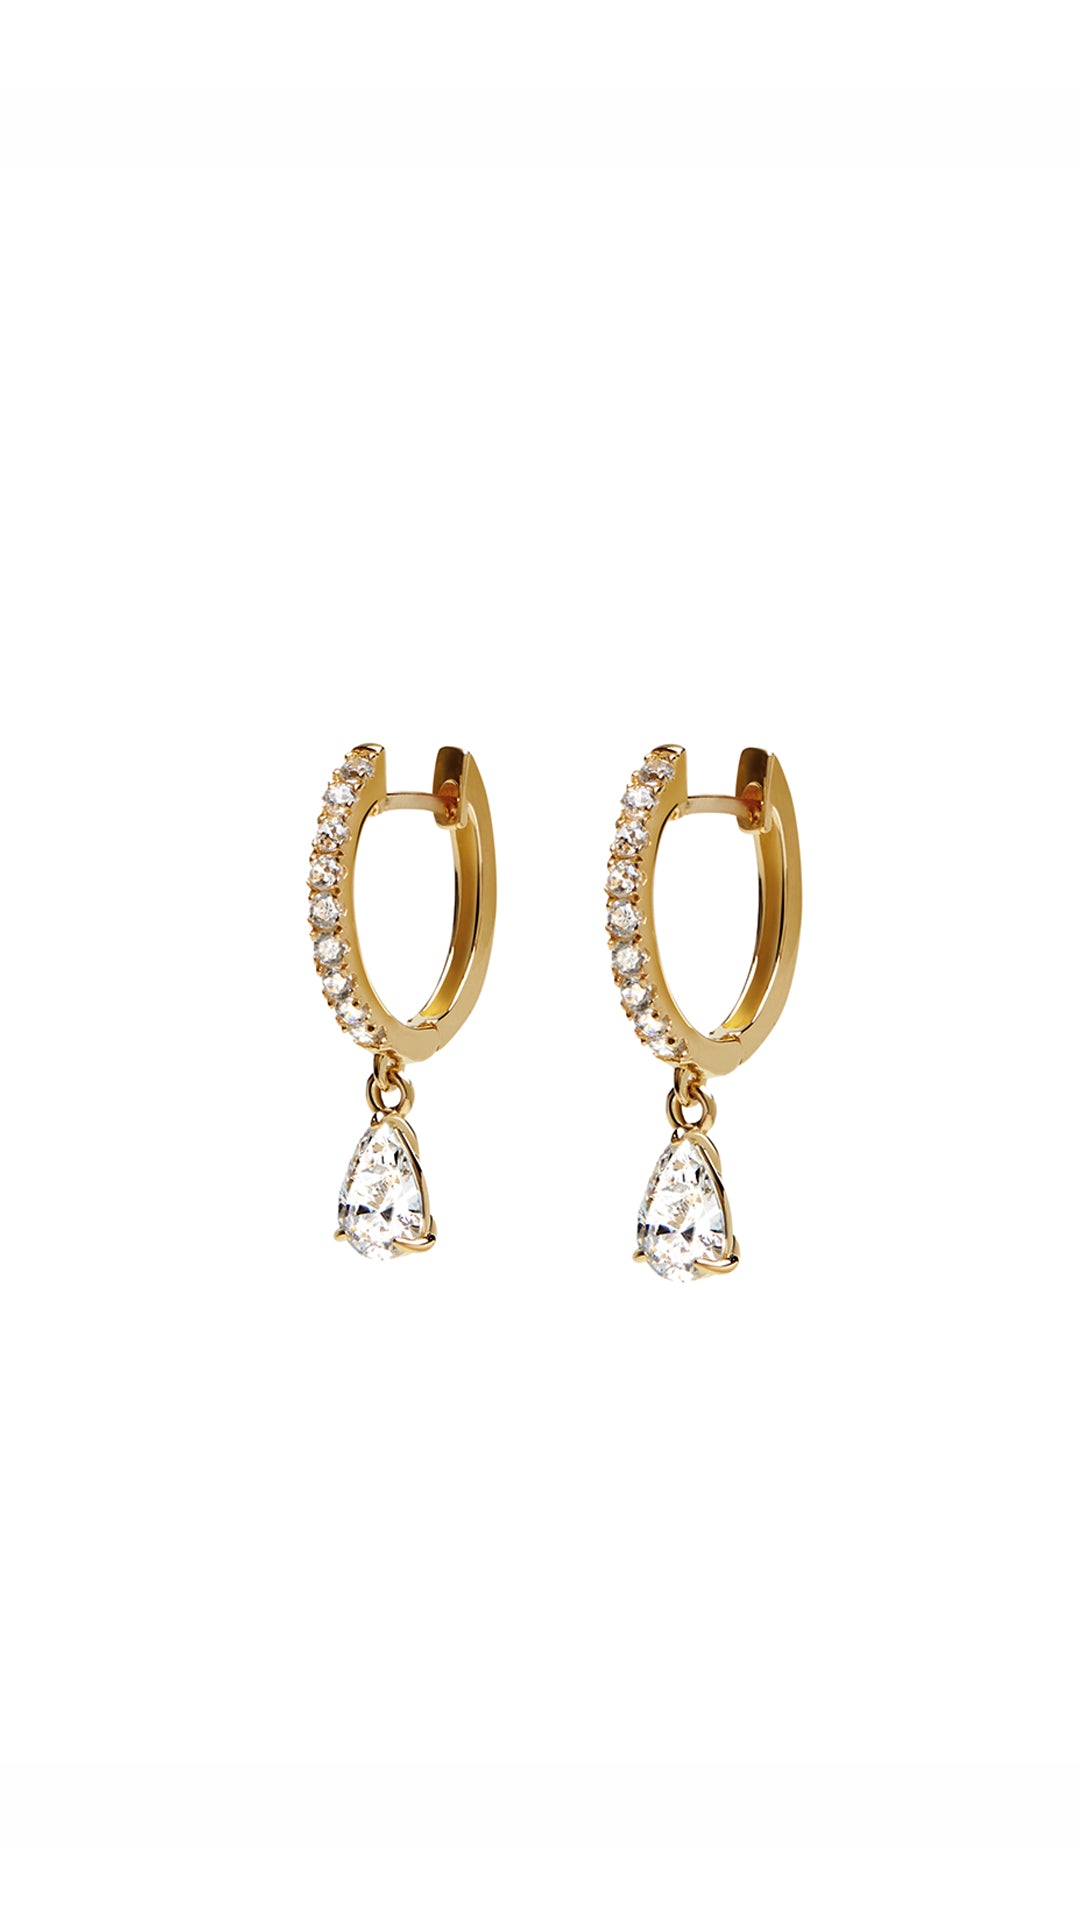 Earrings for Women | Gold, Silver & Lab Diamond Earrings | by CARAT ...